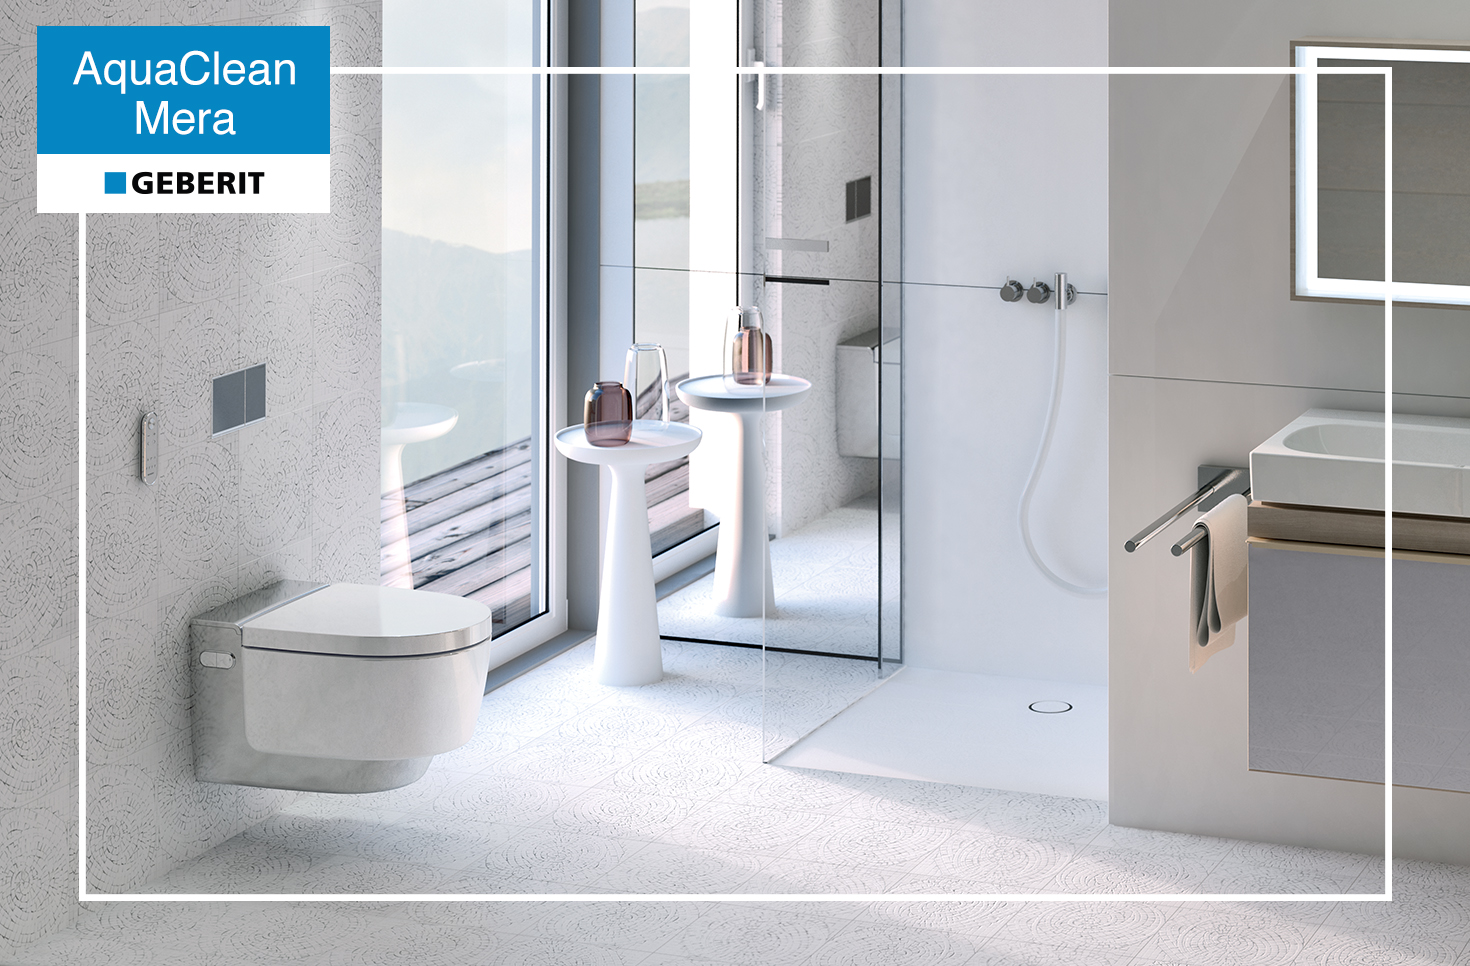 Το νέο διαμάντι της Geberit, AquaClean Mera Comfort WC, μια ολοκληρωμένη & καινοτόμα λύση για το μπάνιο σας